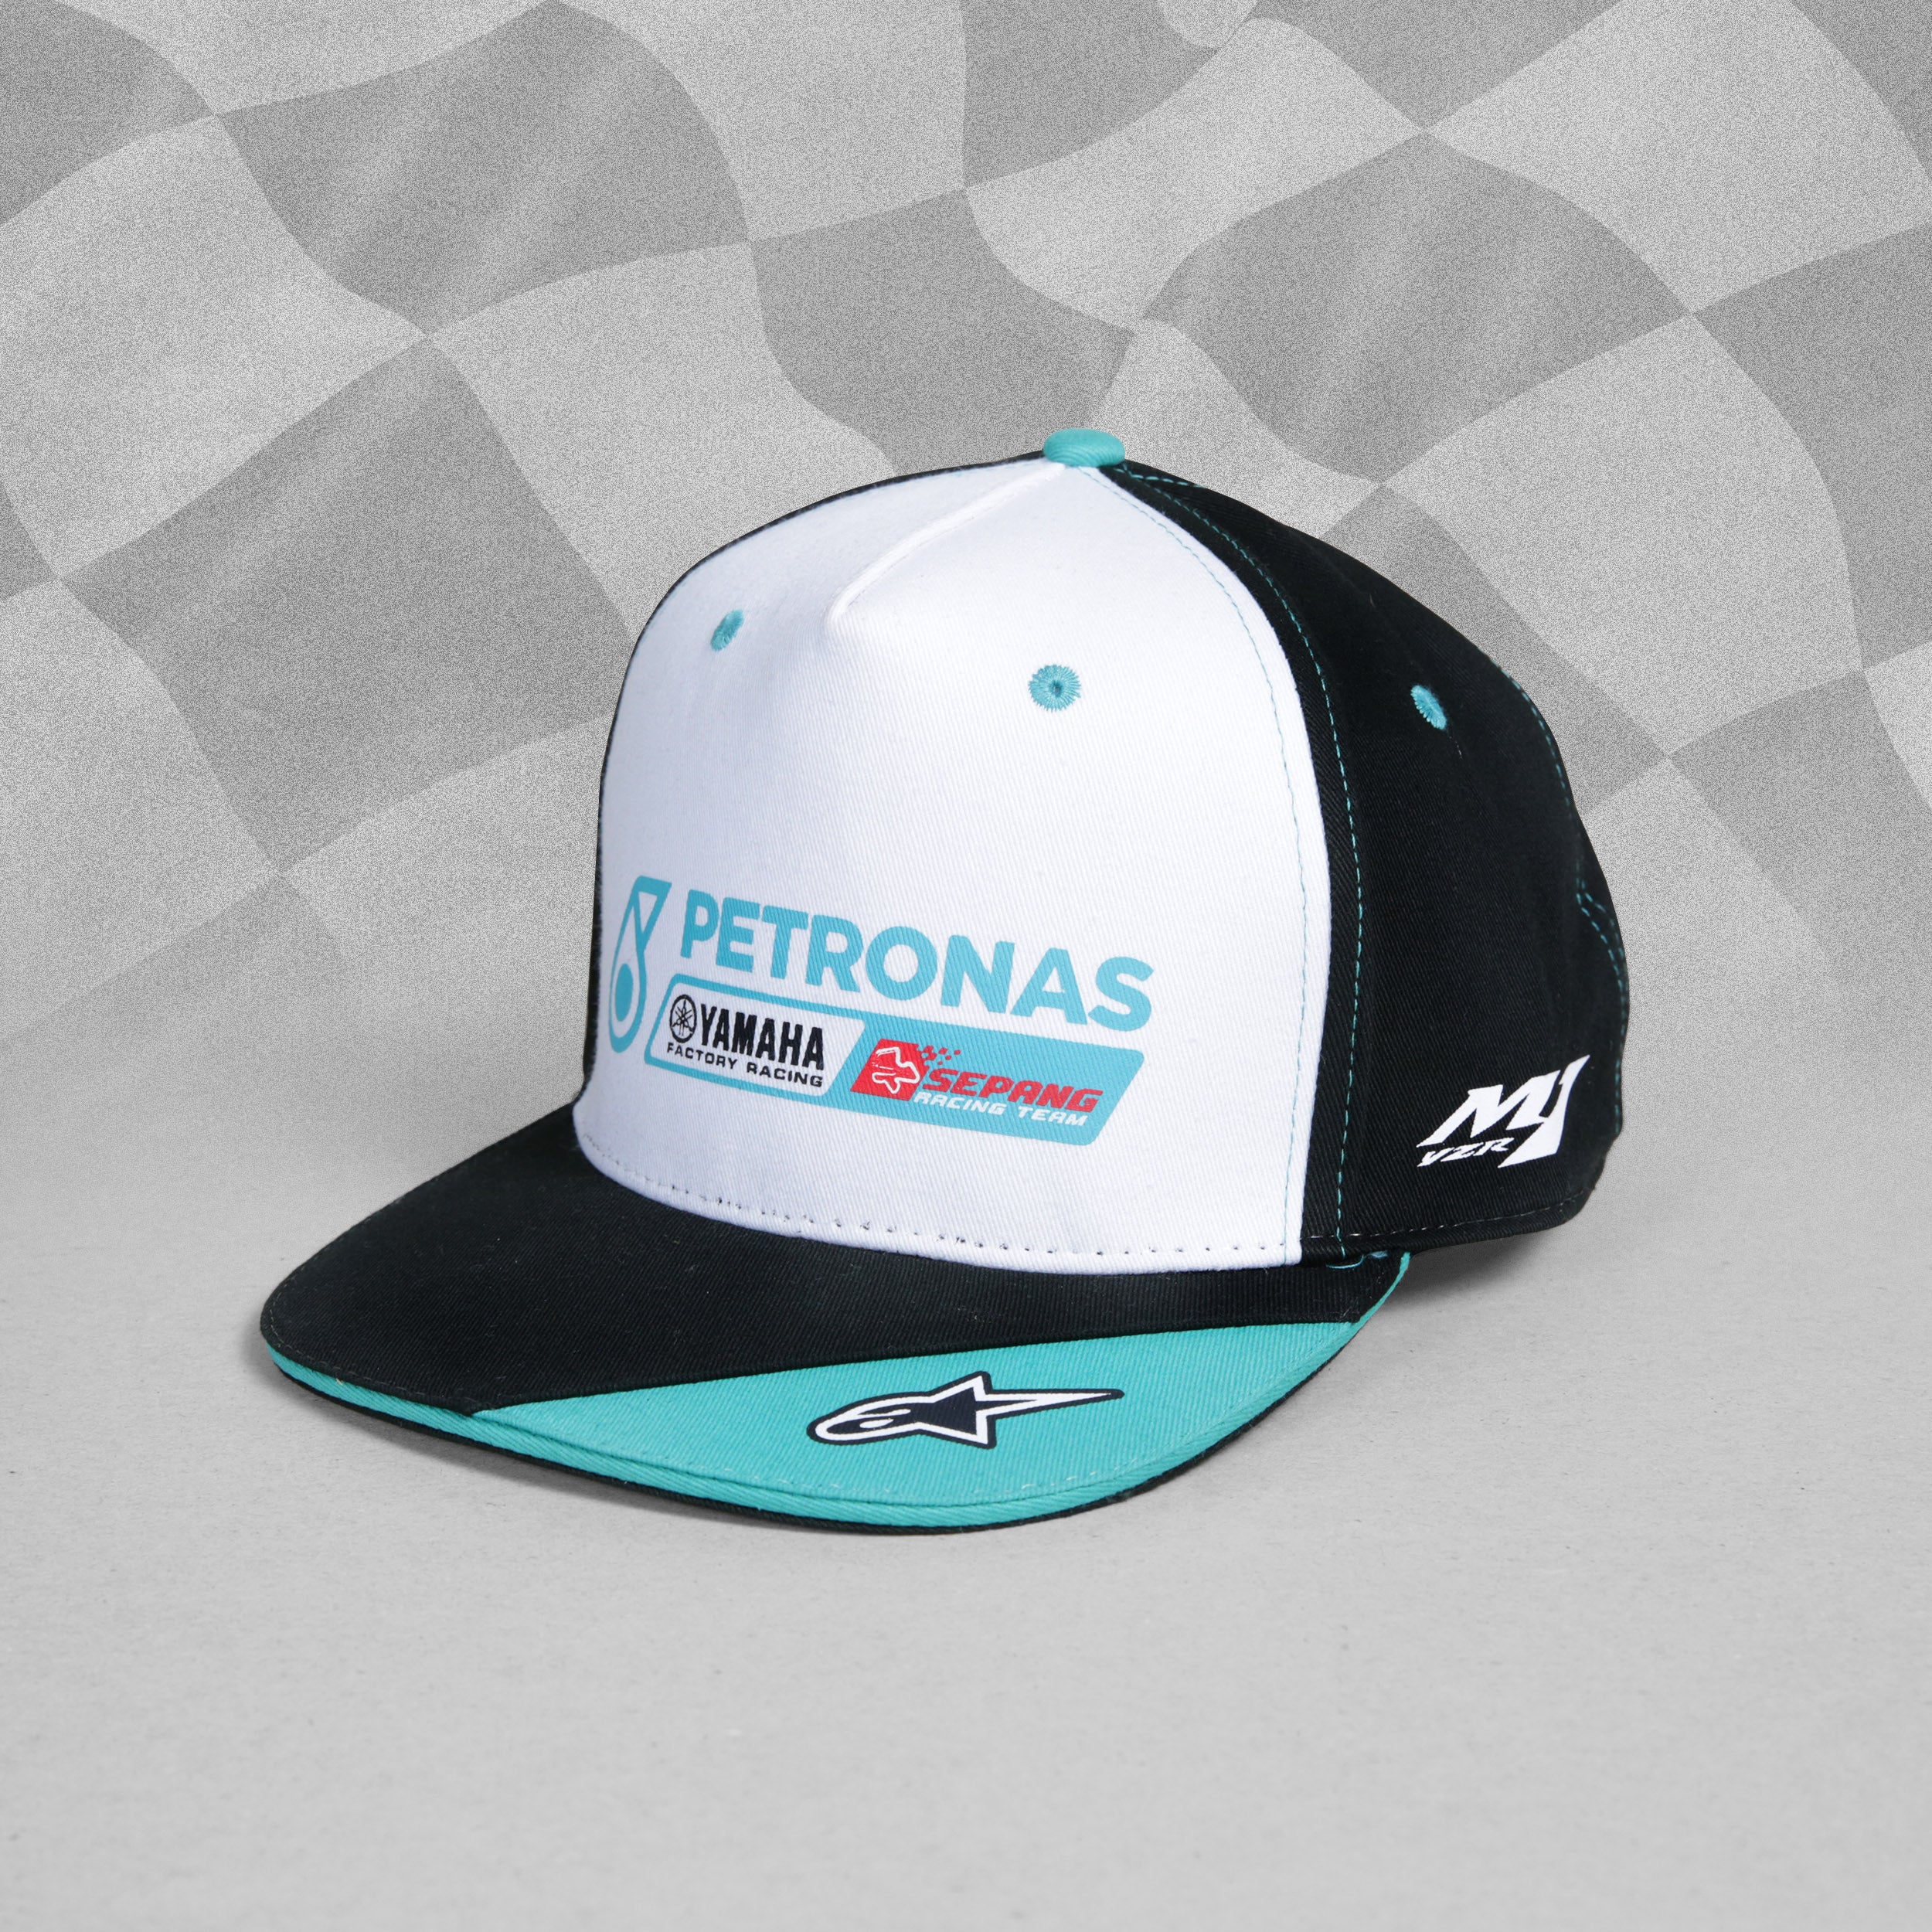 Petronas Yamaha MotoGP Team Flat Peak Baseball Cap